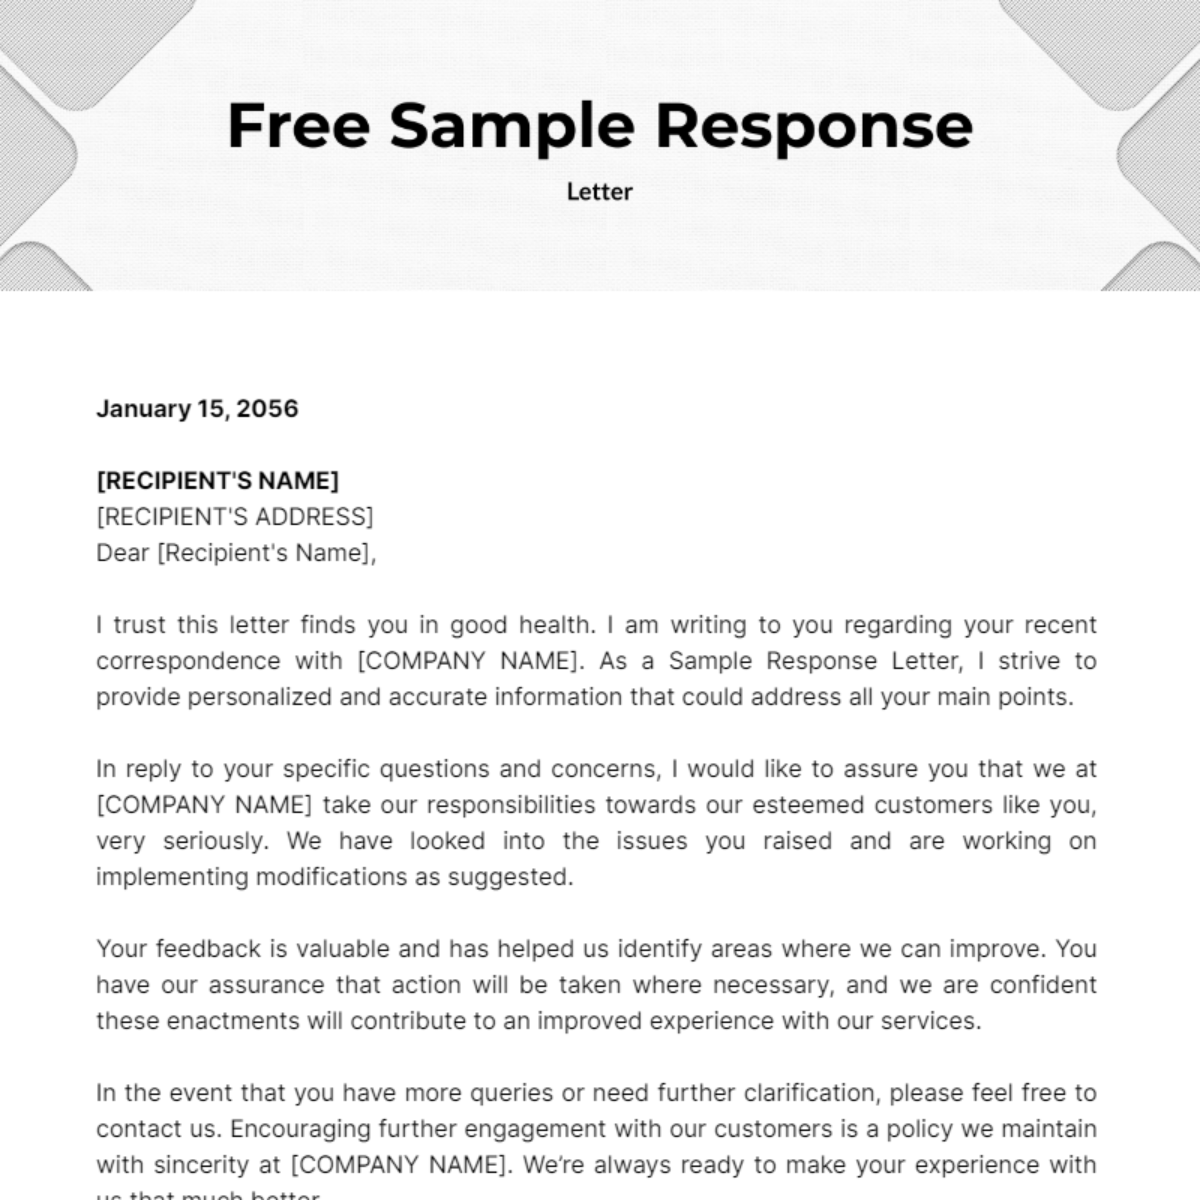 Free Sample Response Letter